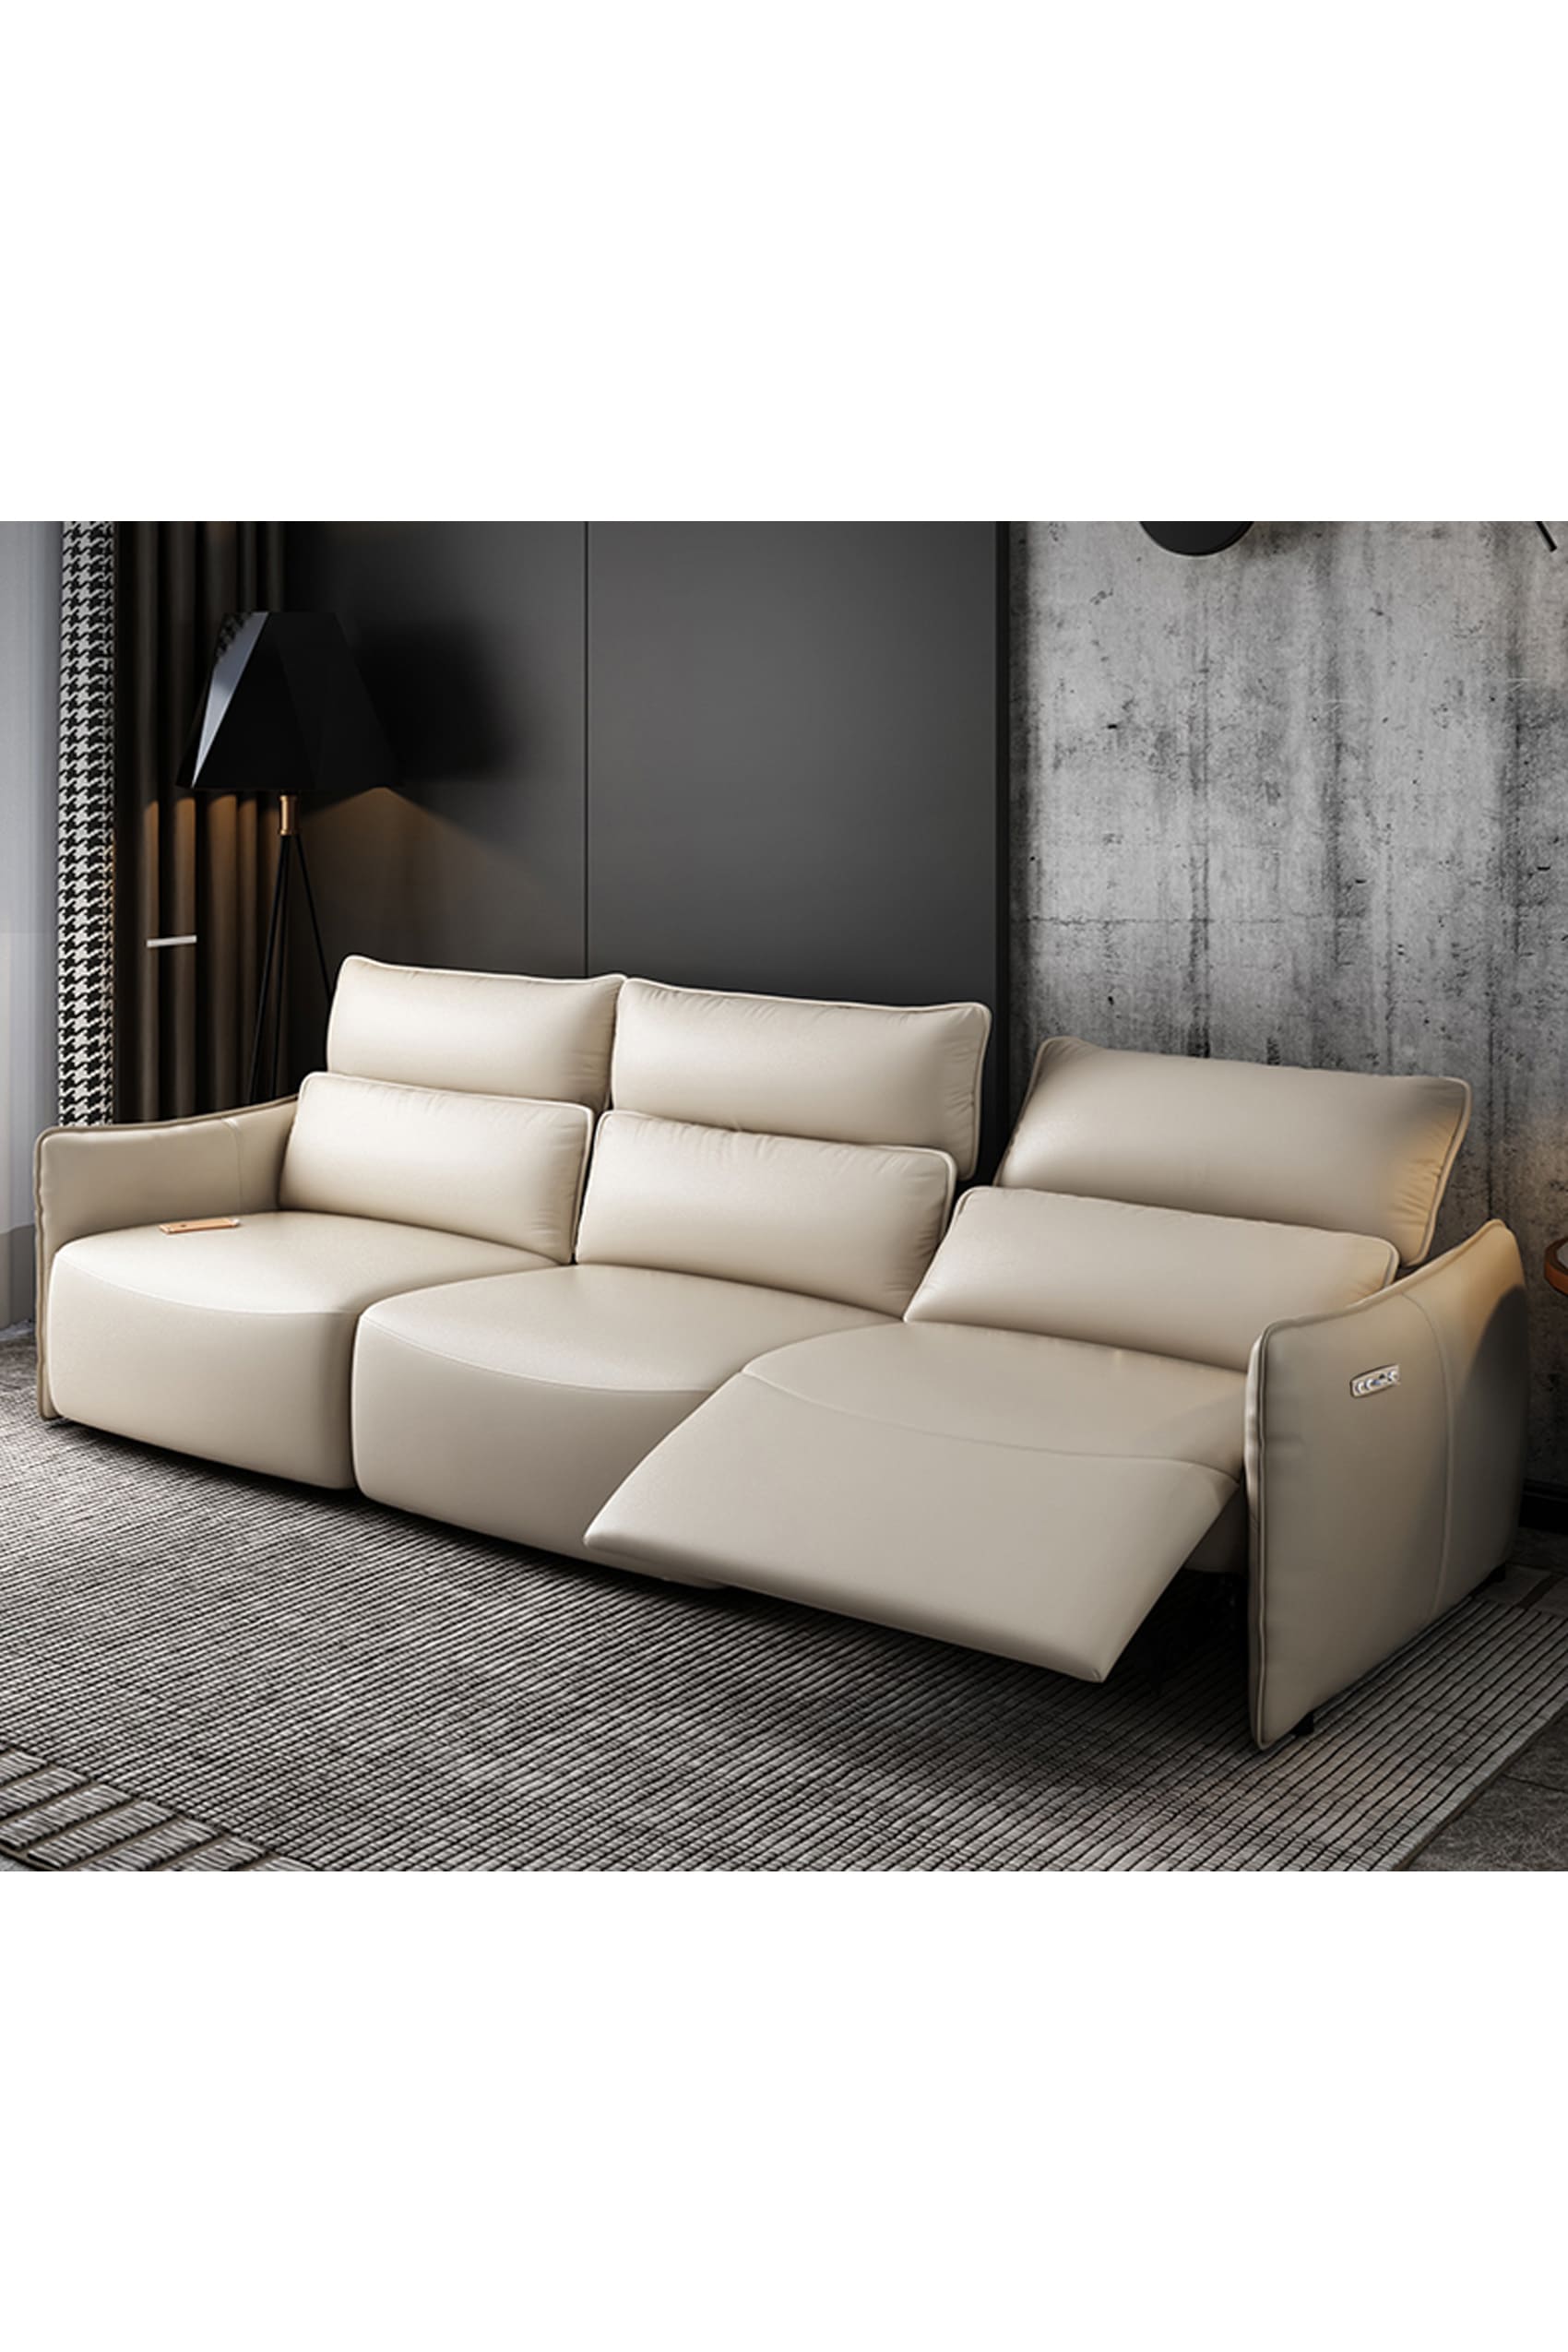 Fardella Leather Electric Recliner Sofa